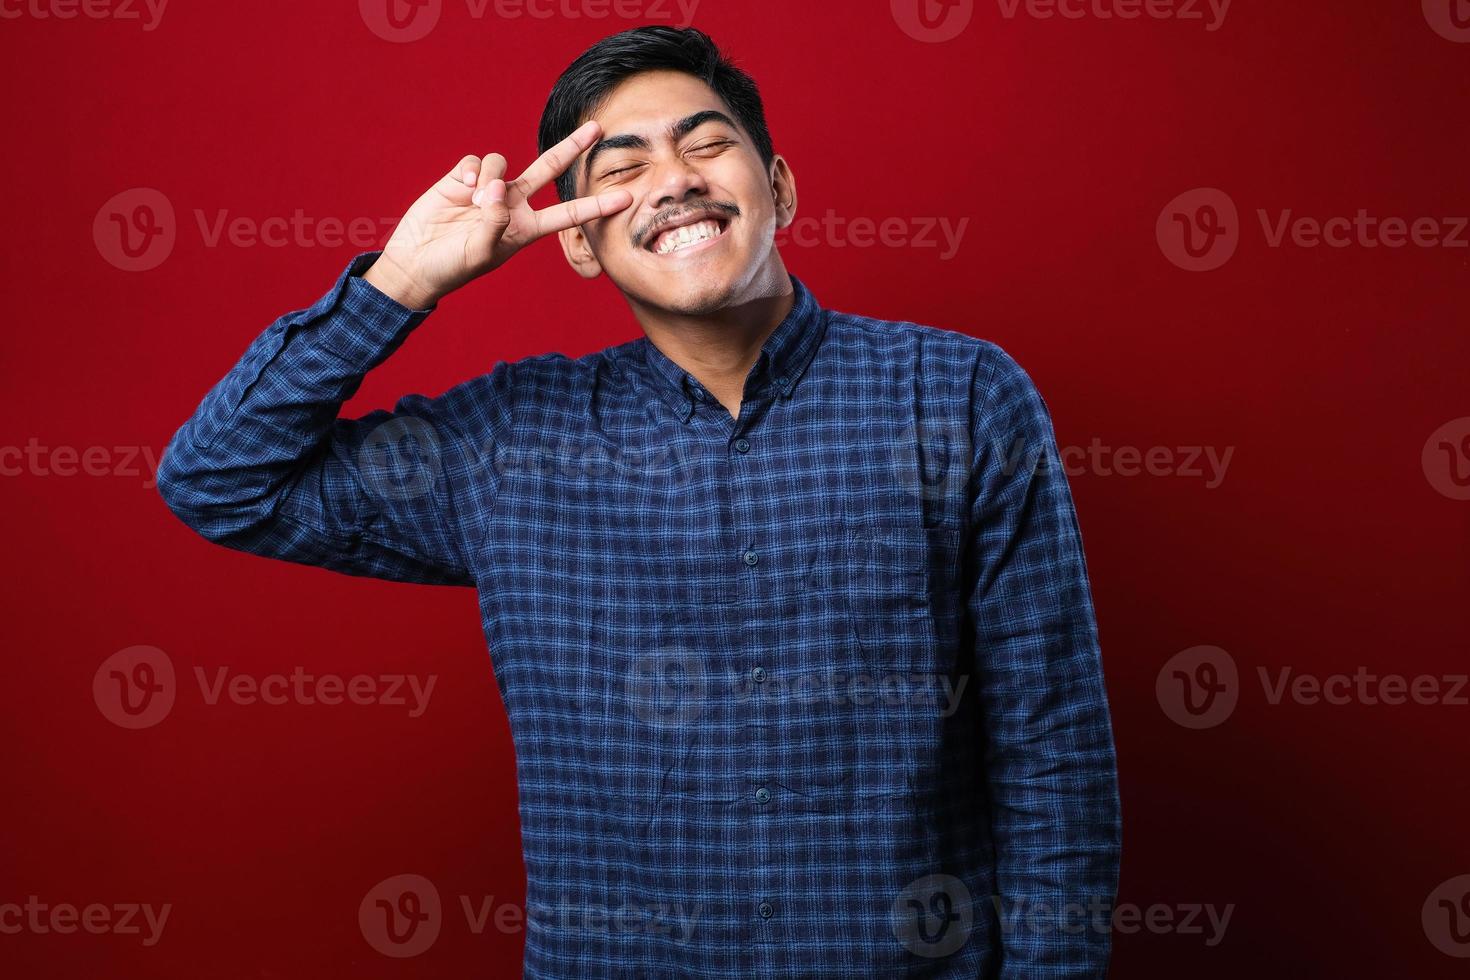 jonge knappe aziatische man met een casual shirt die vredessymbool doet met vingers over het gezicht, vrolijk glimlachend met overwinning foto